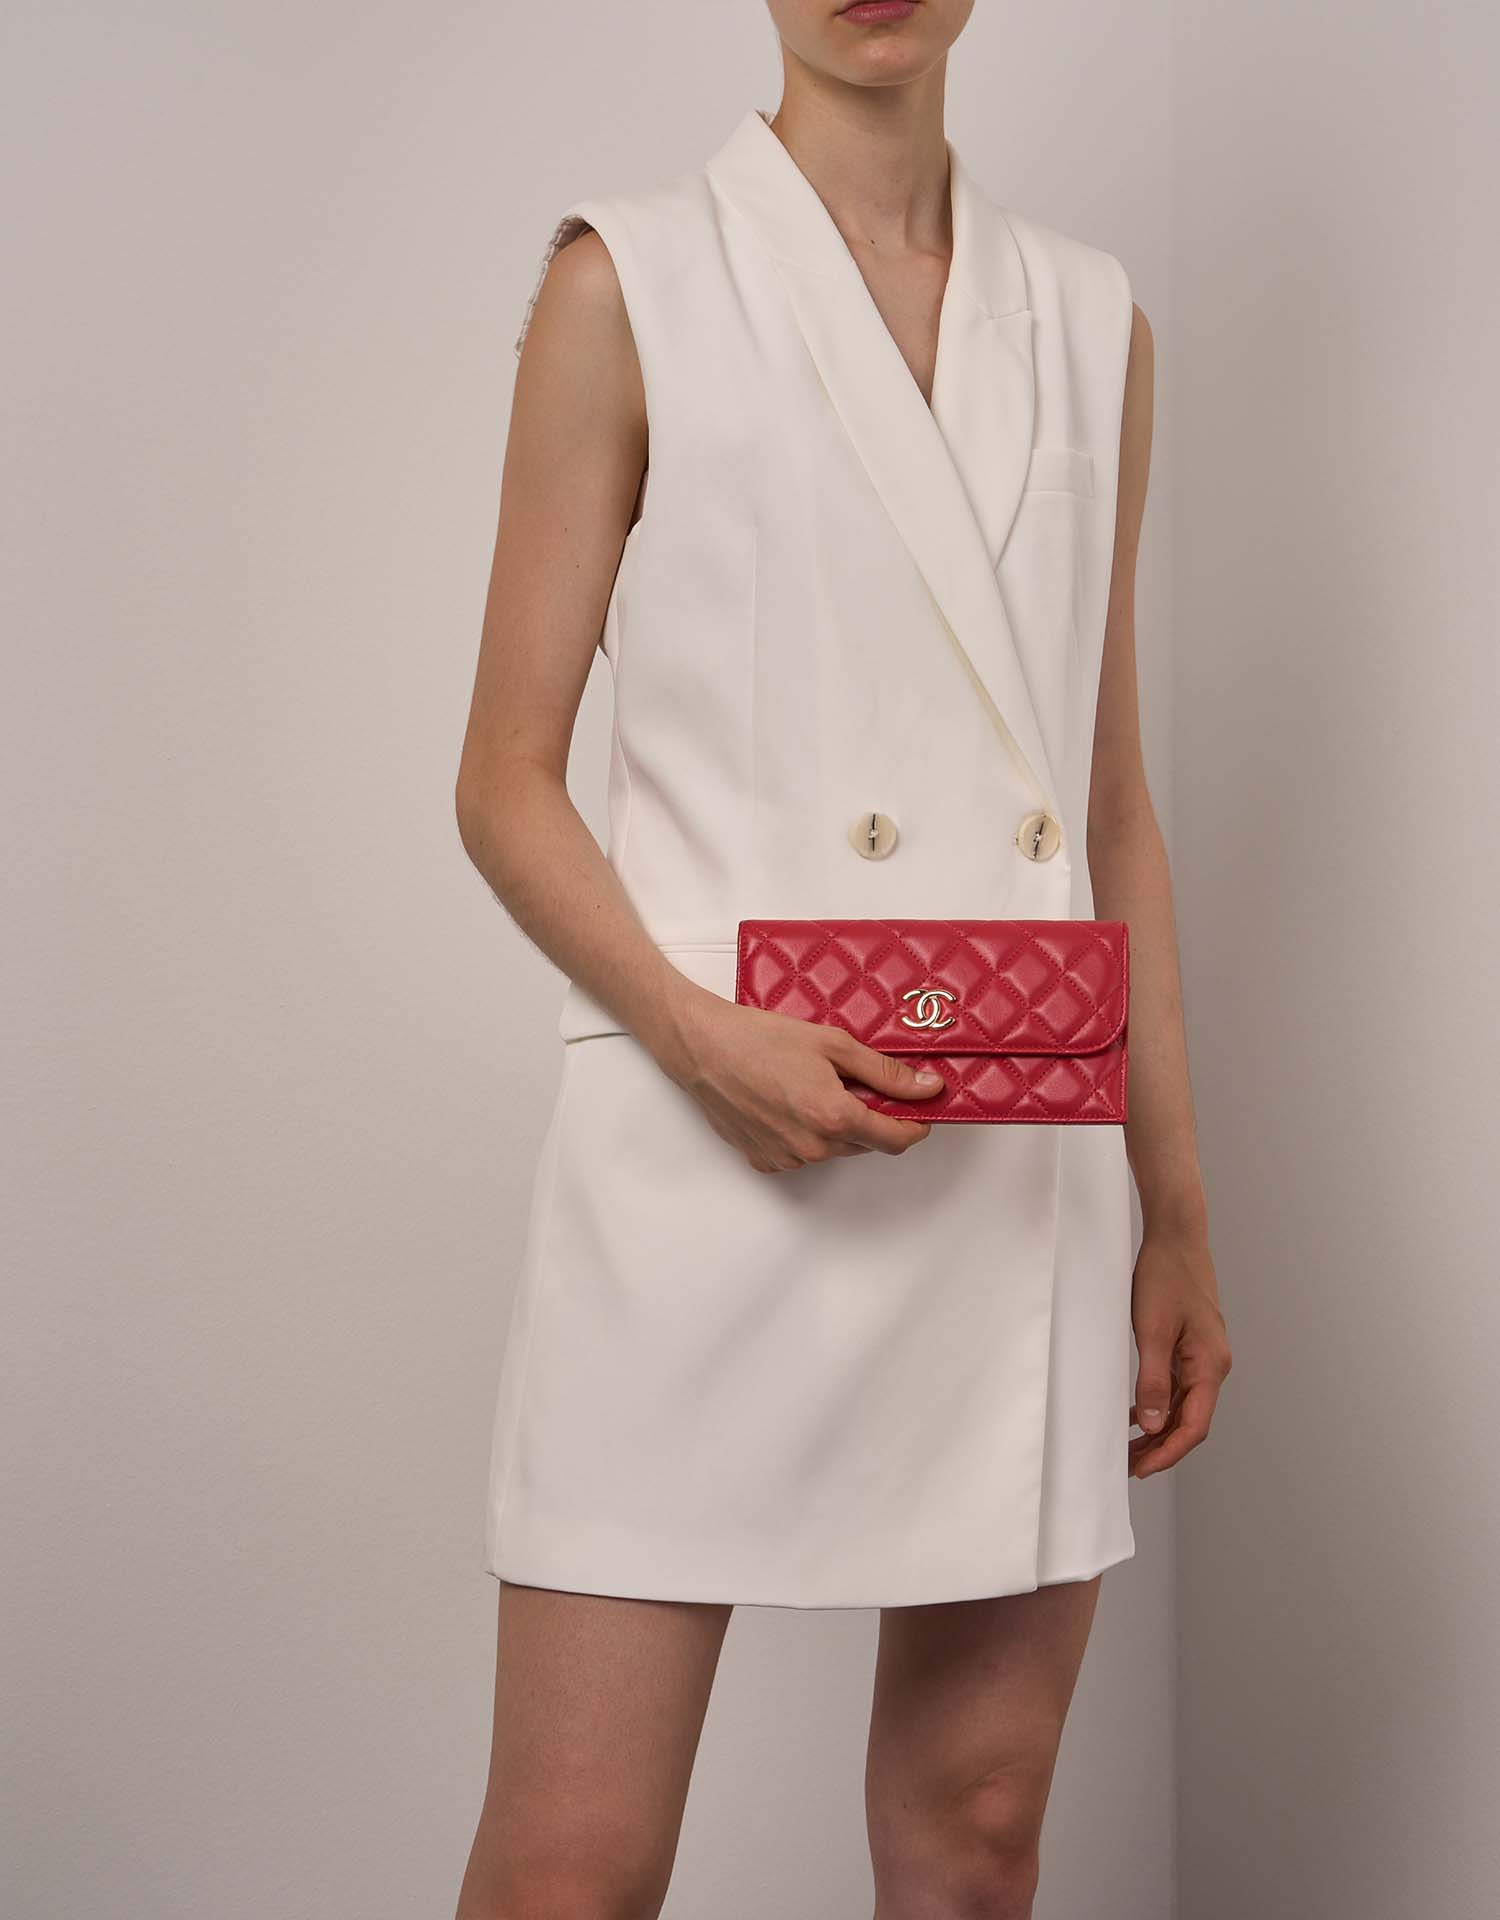 Chanel Timeless Clutch Red Sizes Worn| Verkaufen Sie Ihre Designer-Tasche auf Saclab.com